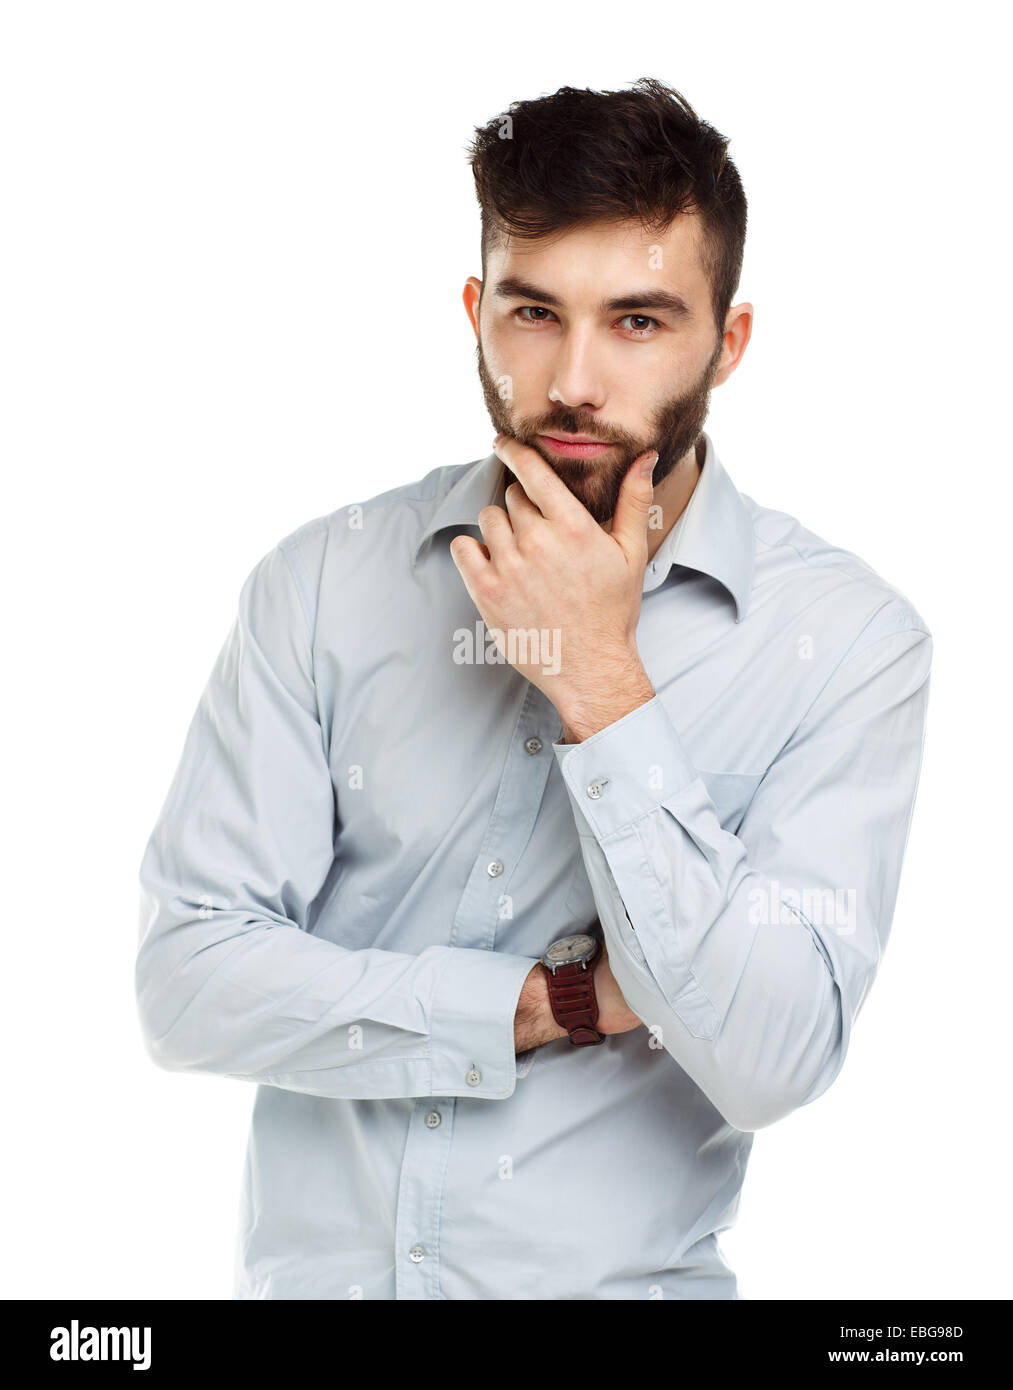 Un jeune homme barbu avec un air sérieux sur son visage isolé sur fond blanc Banque D'Images